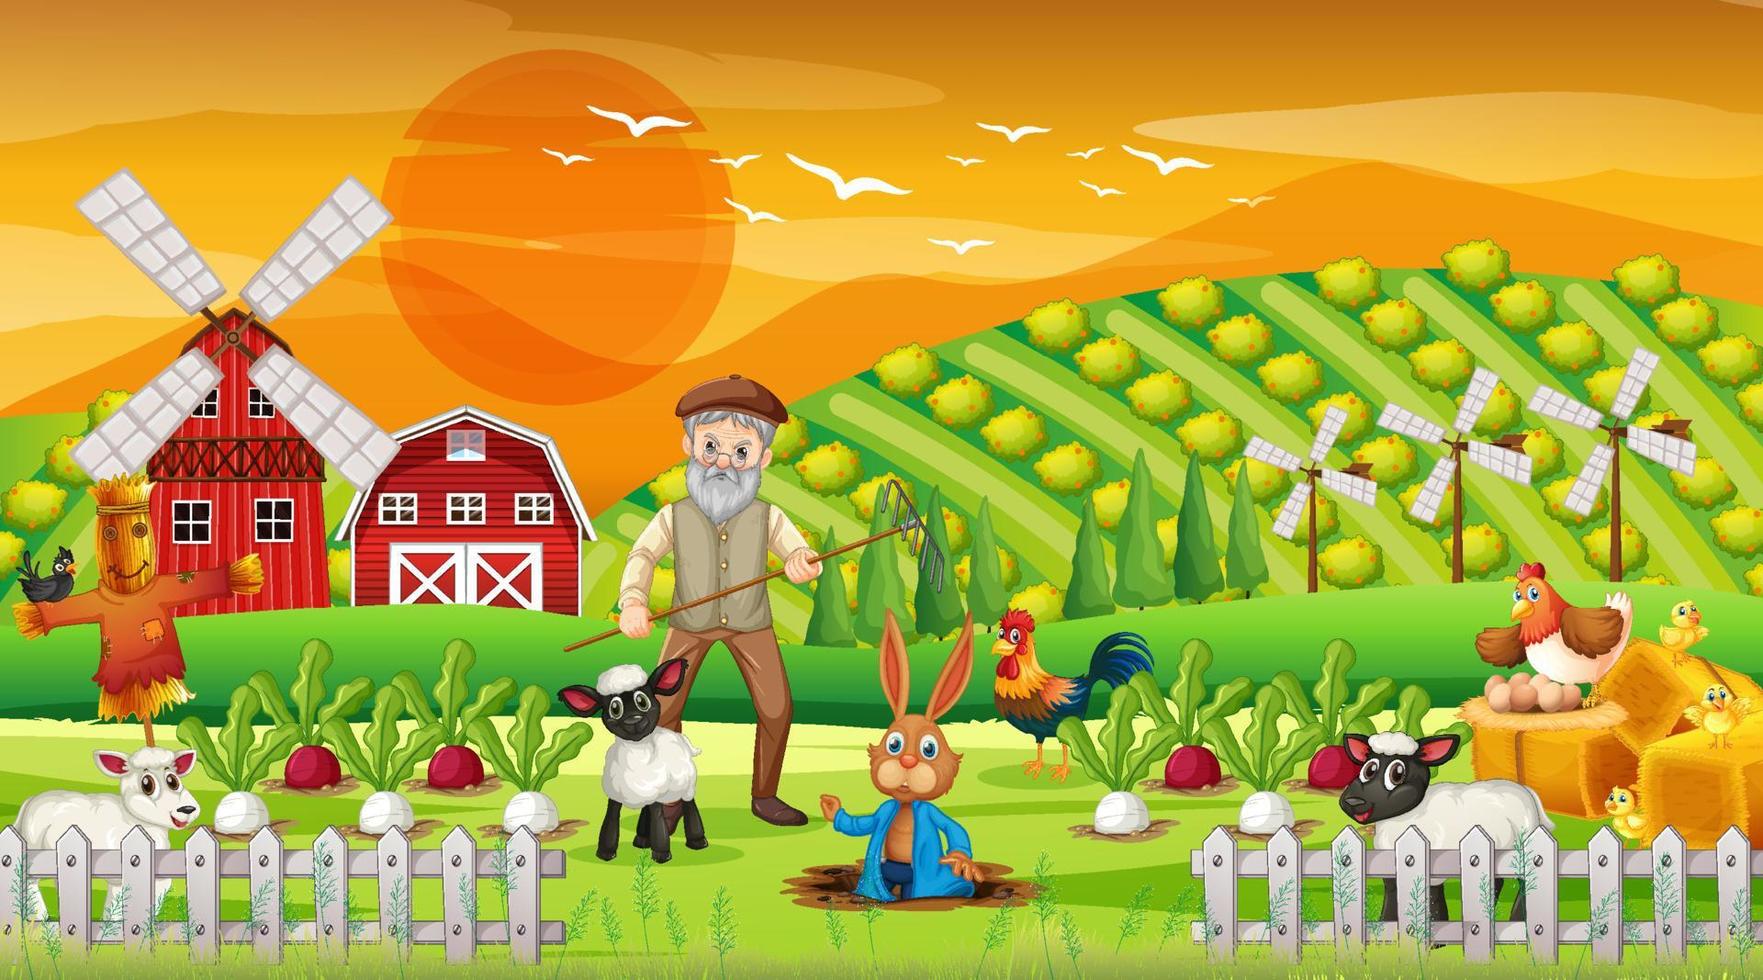 boerderij bij zonsondergang tijdscène met oude boerenman en boerderijdieren vector